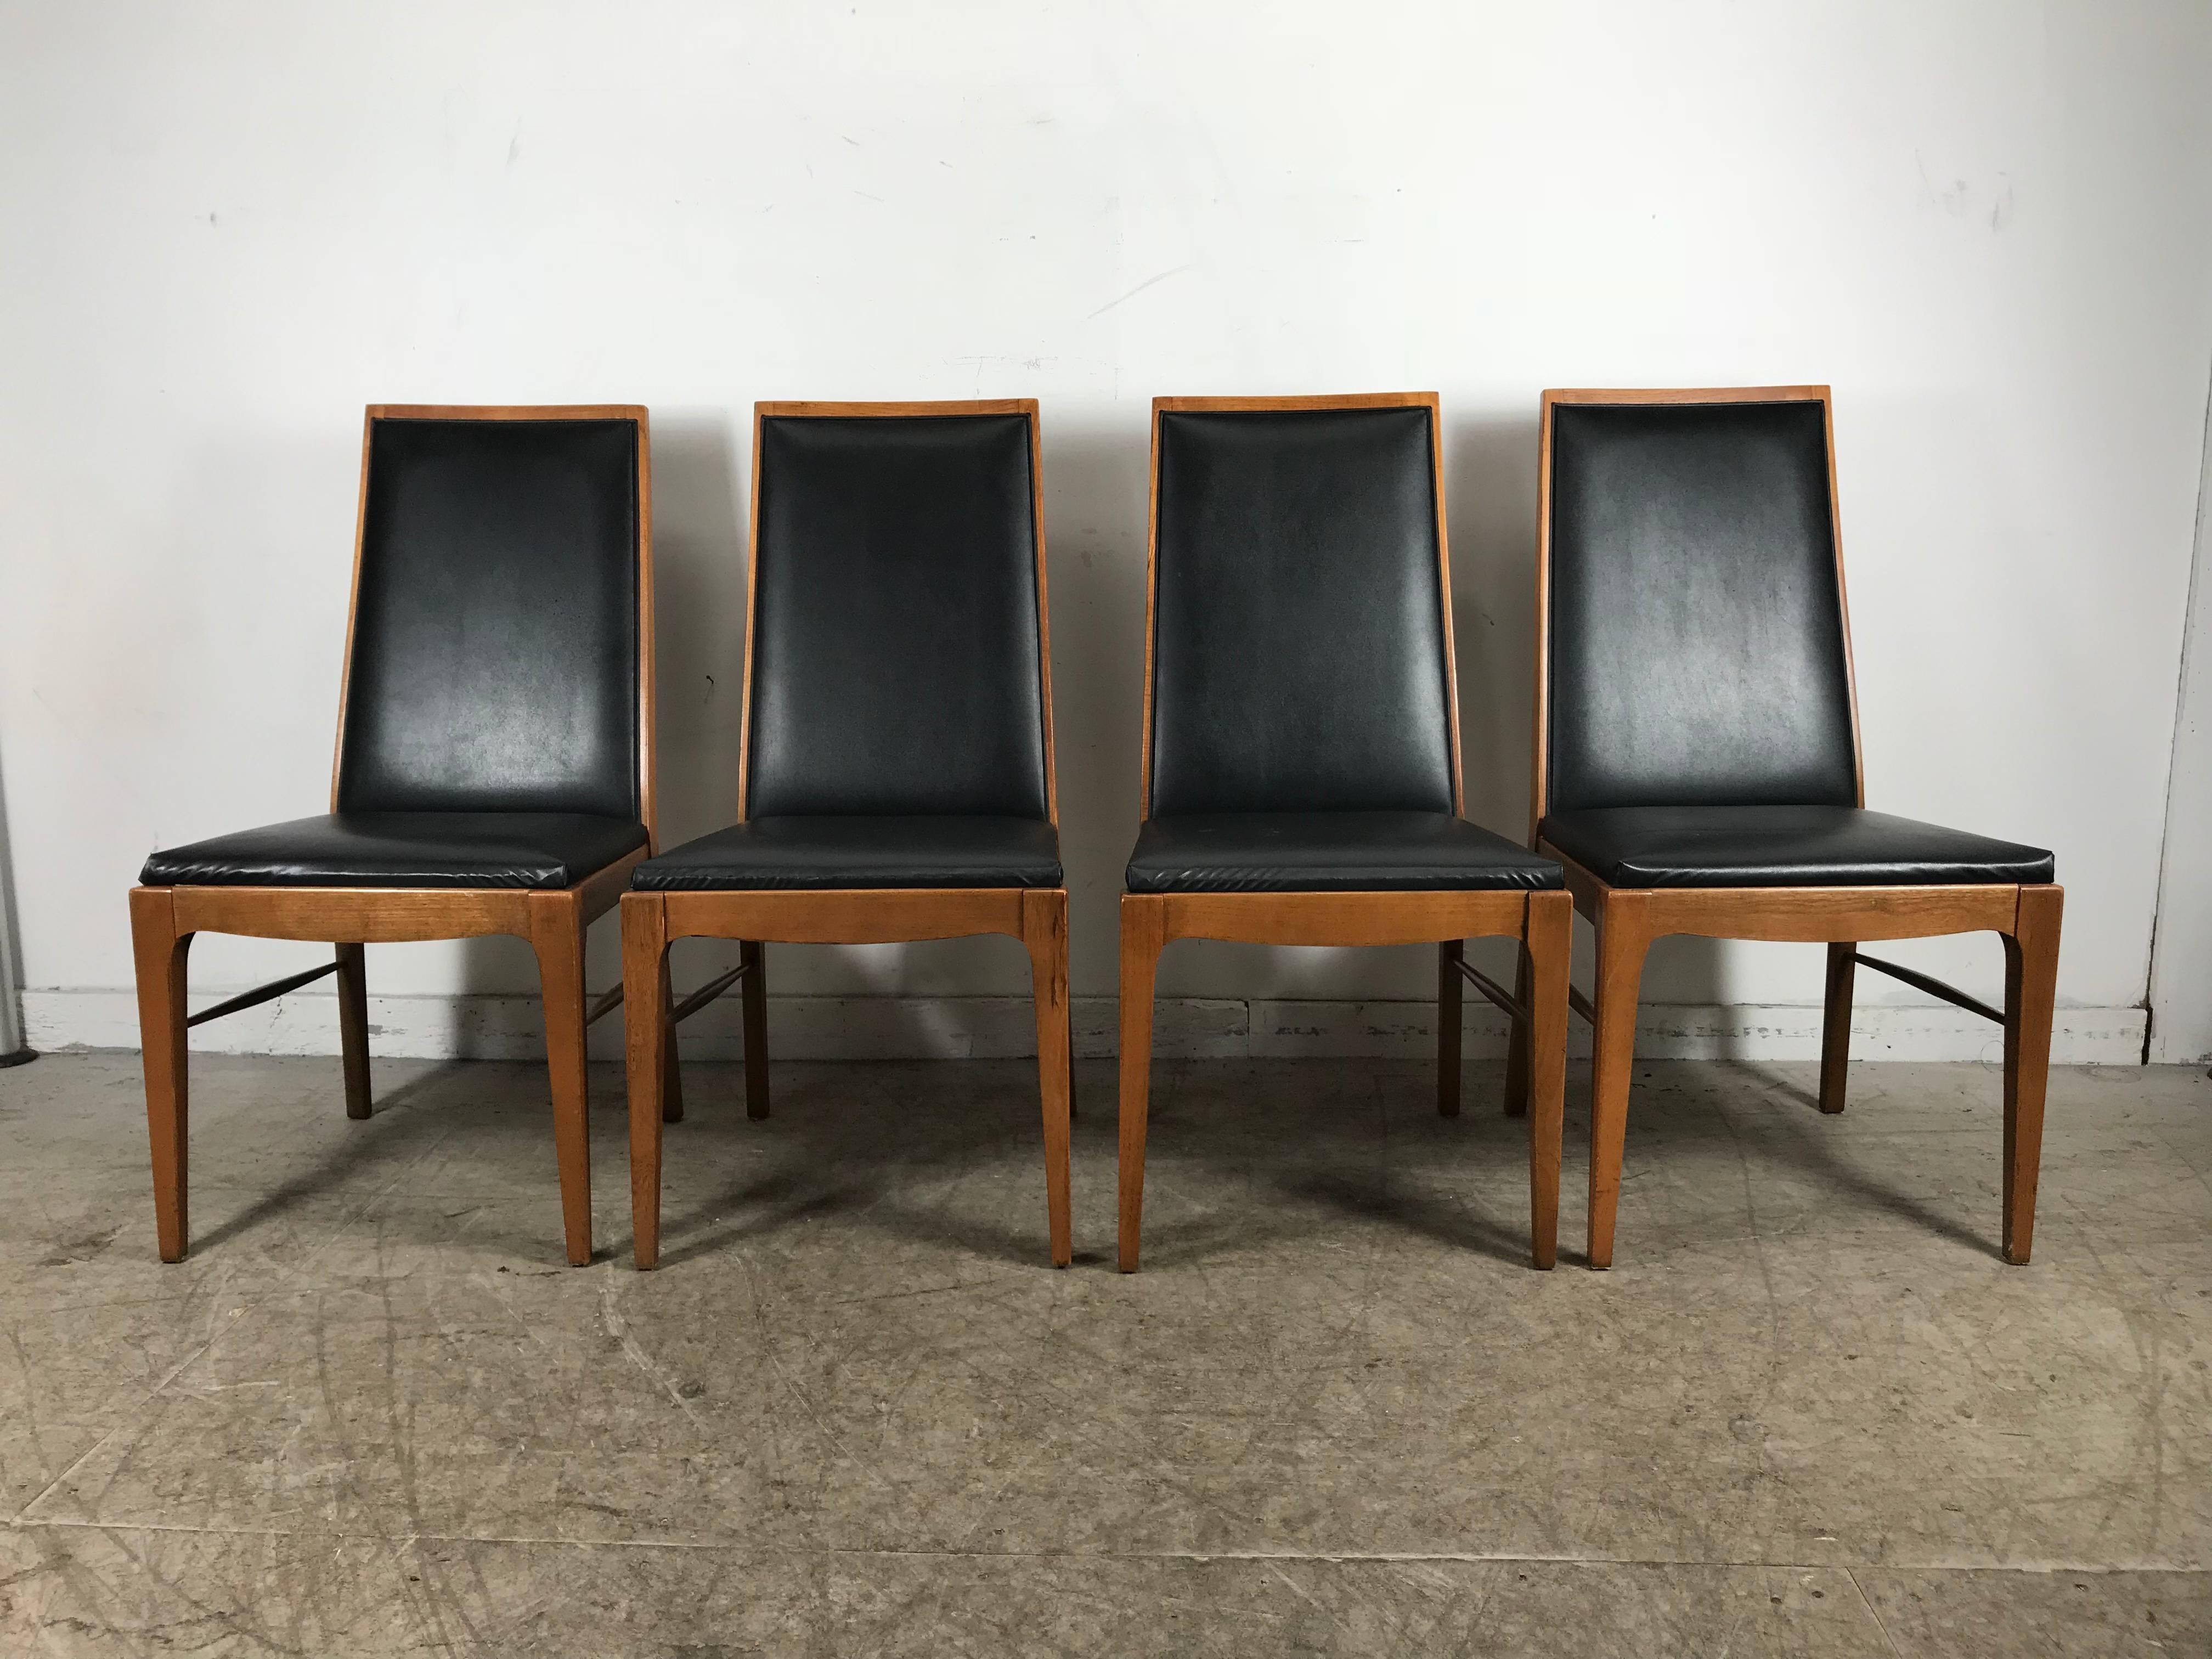 Satz von vier modernistischen Esszimmerstühlen aus Nussbaumholz von Lane Classic, schlichtes, elegantes Design, Rahmen aus massivem Nussbaumholz, robuste, feste Verbindungen, äußerst bequem. Persönliche Zustellung in New York City oder überall auf